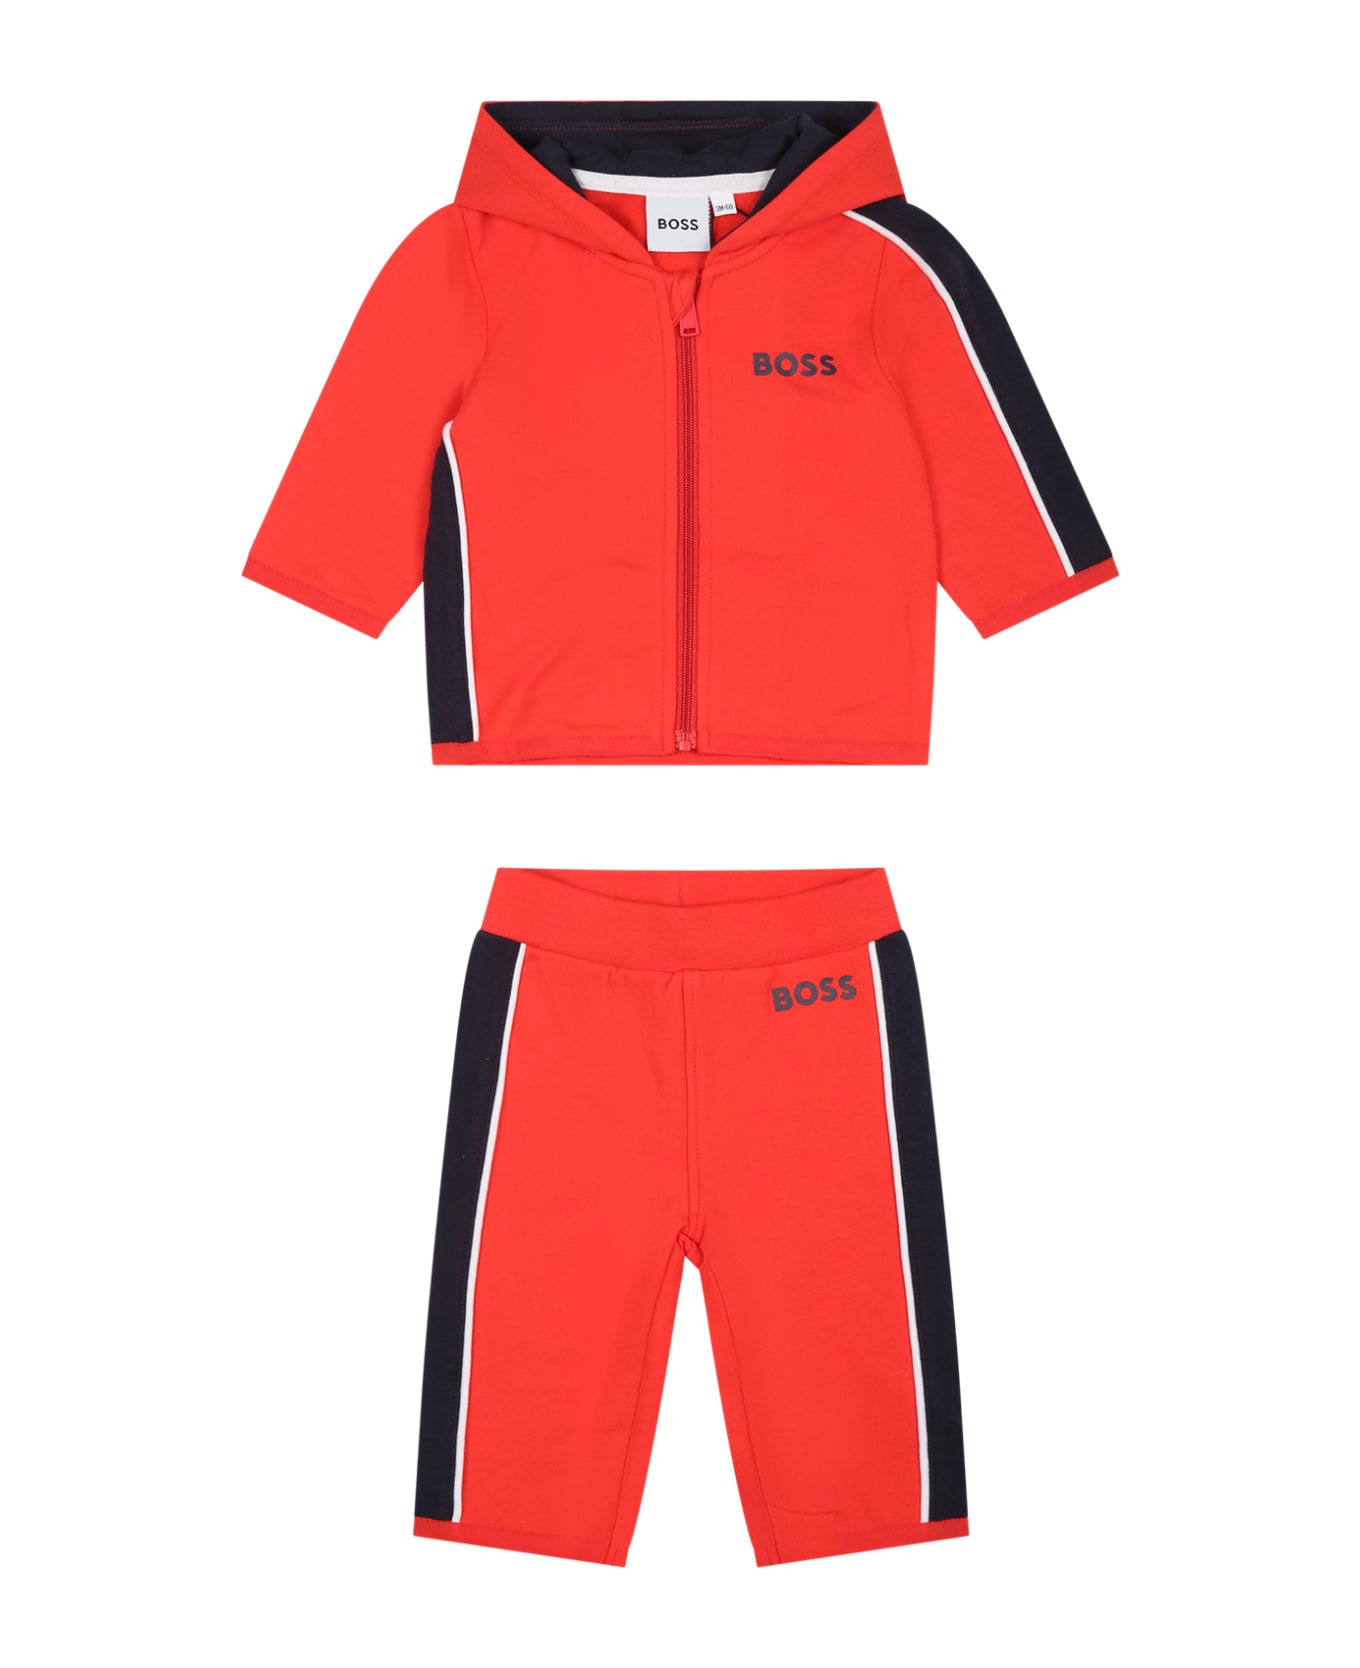 Hugo Boss Orange Set For Baby Boy With Logo - Orange ボトムス